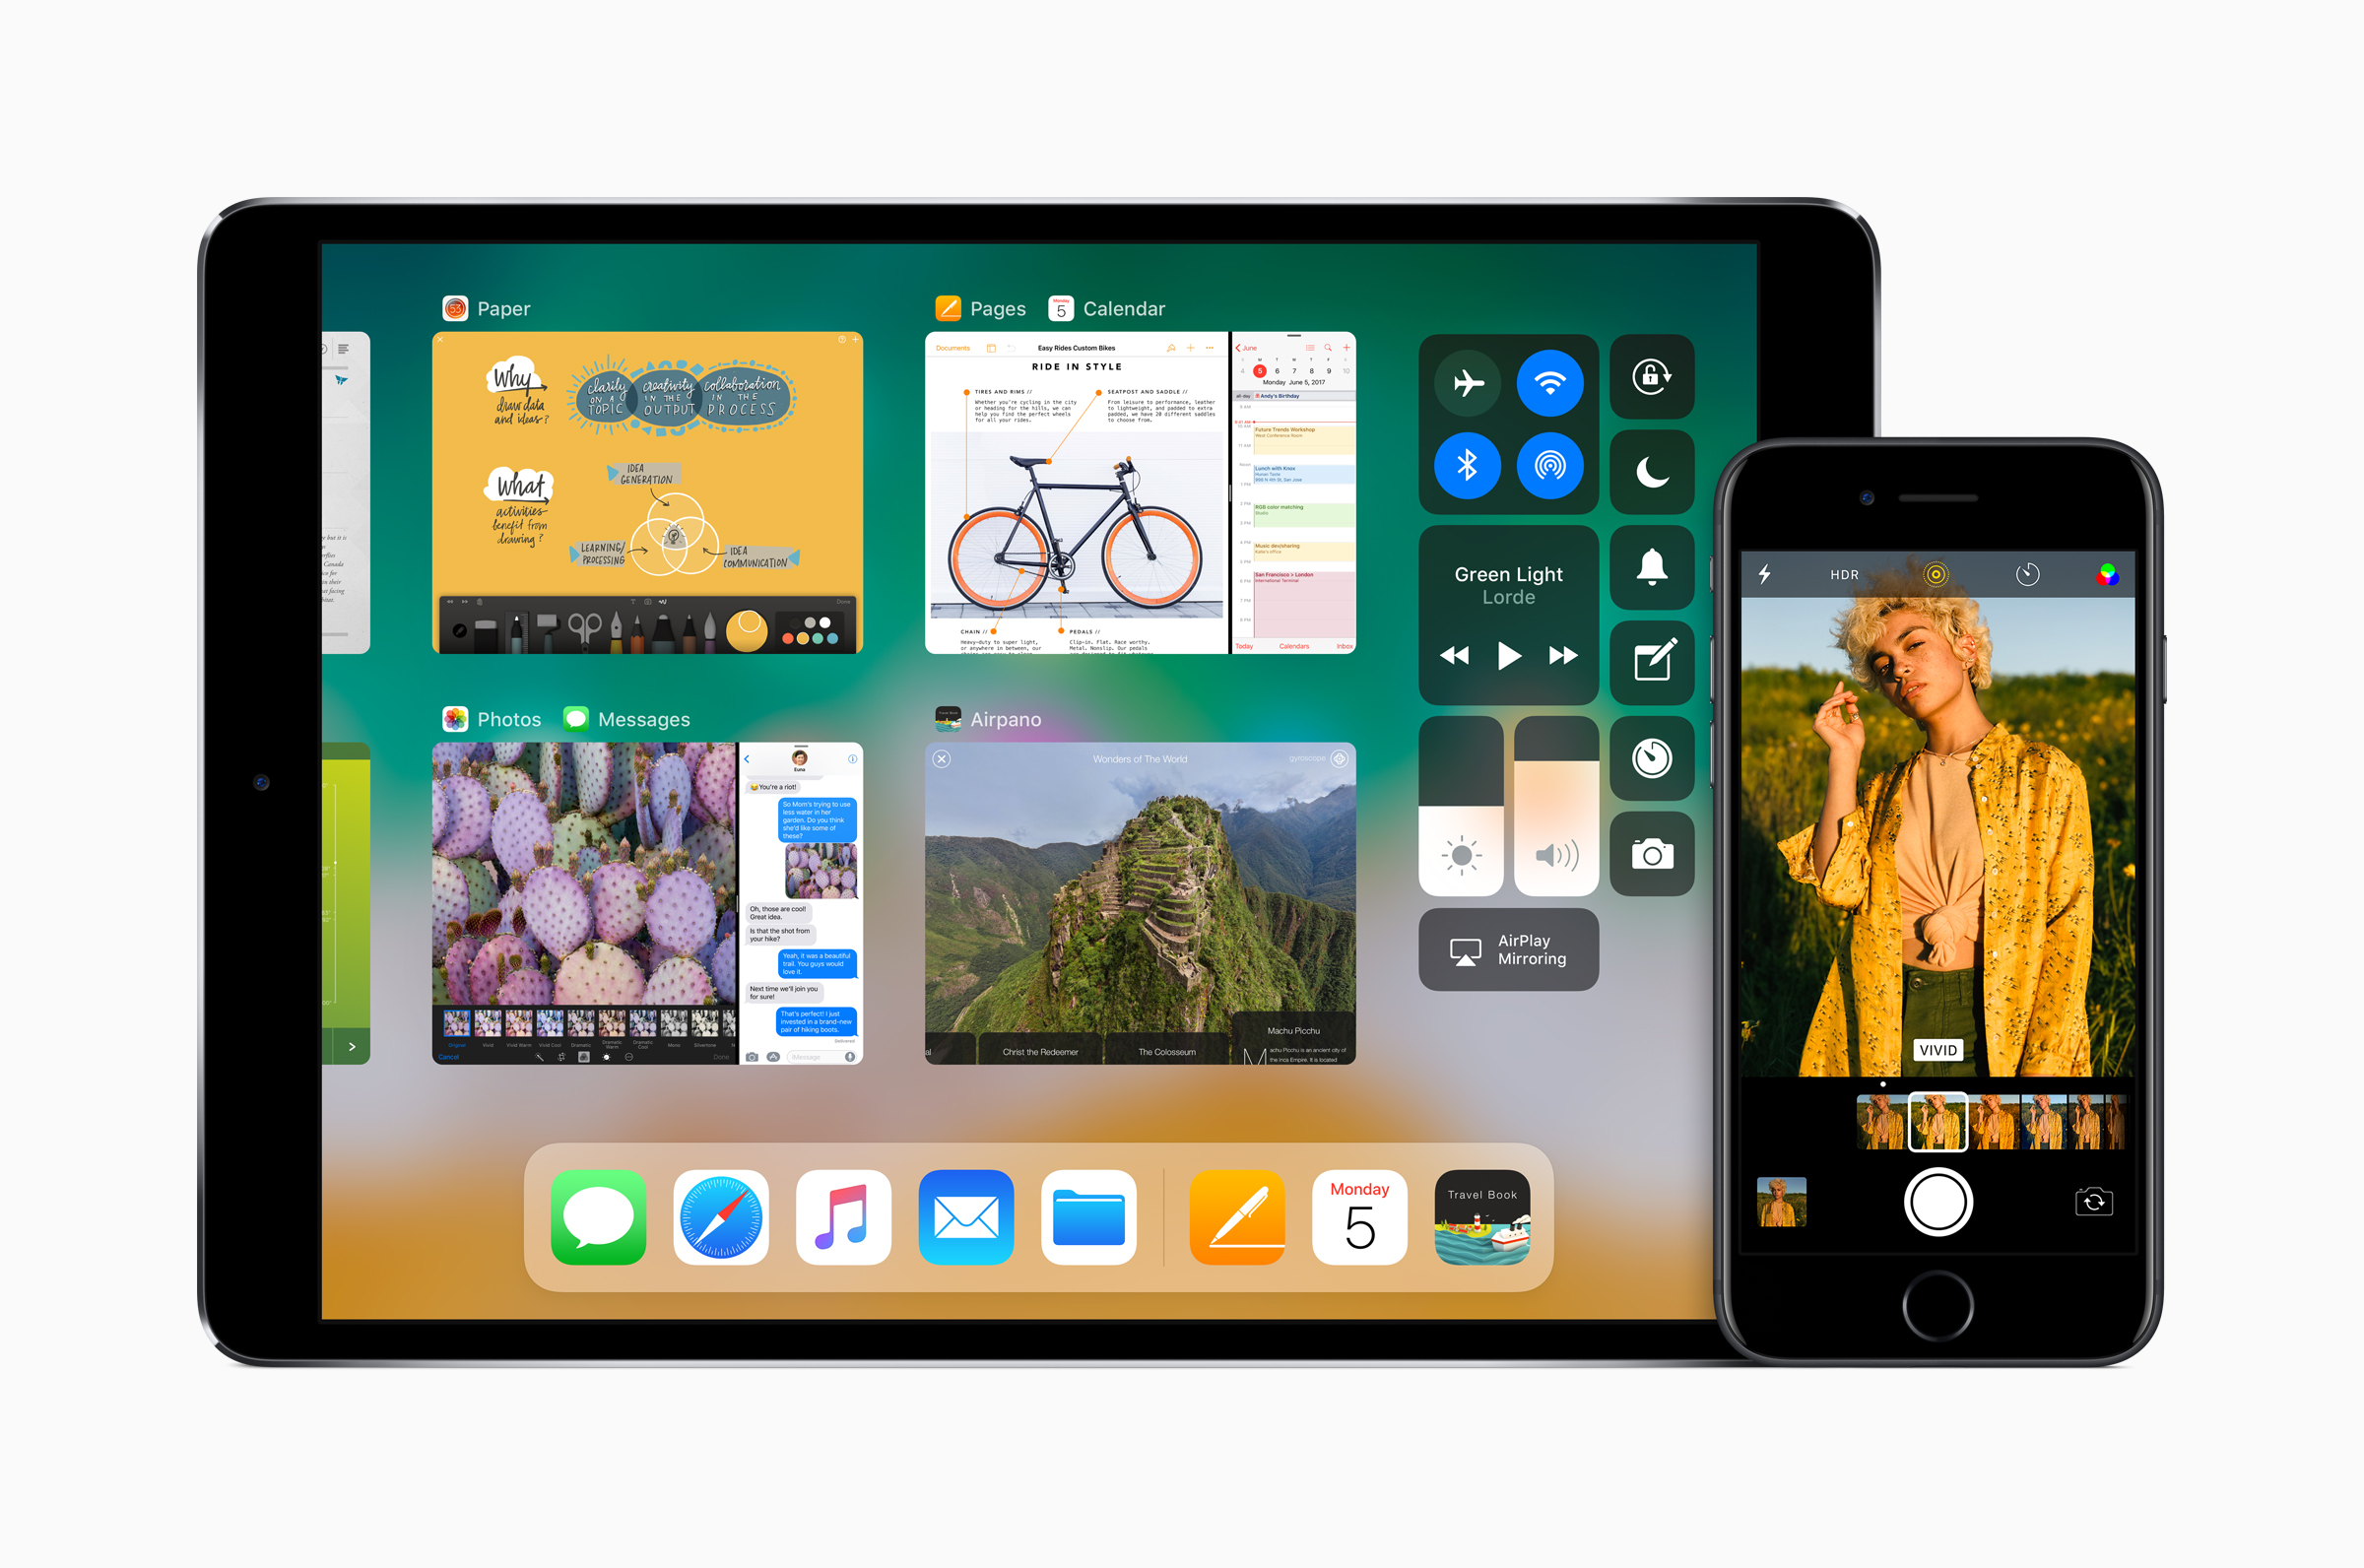 iOS 11.1 corrige bugs e traz de volta um recurso para alternar entre apps